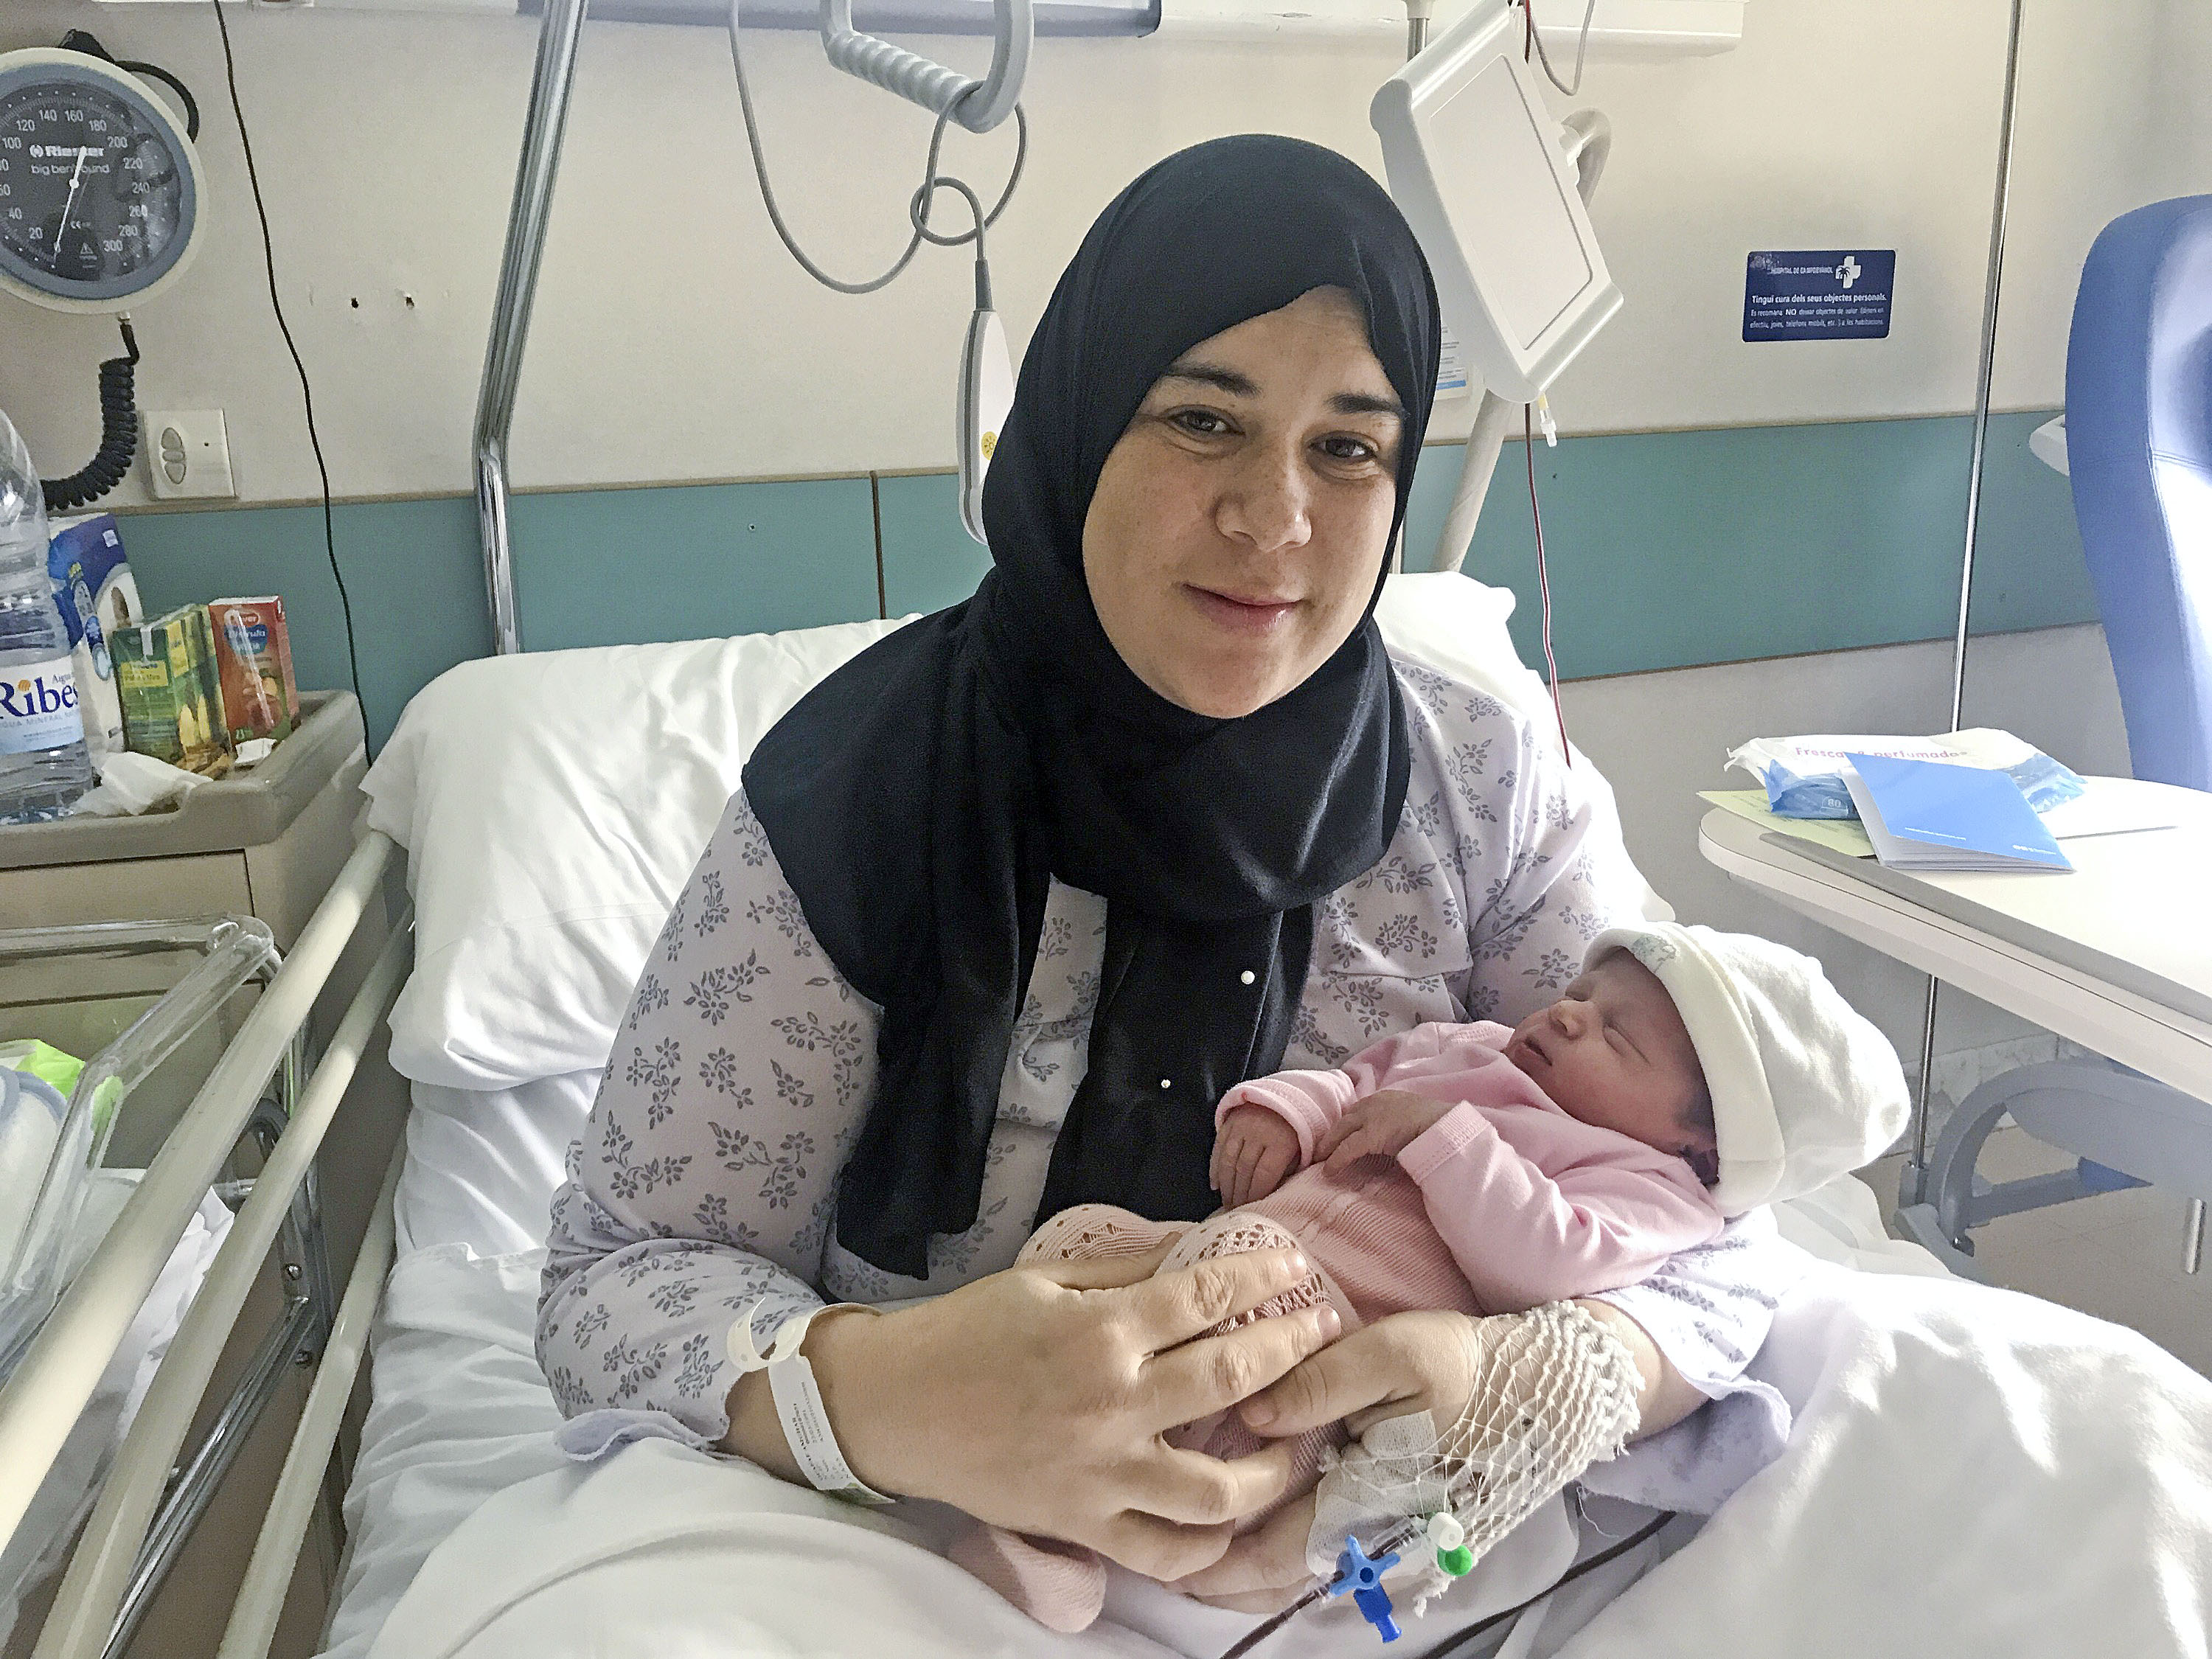 La mare, Ouafe Amghar, amb la seva filla Alai, el primer nadó nascut al Ripollès el 2020